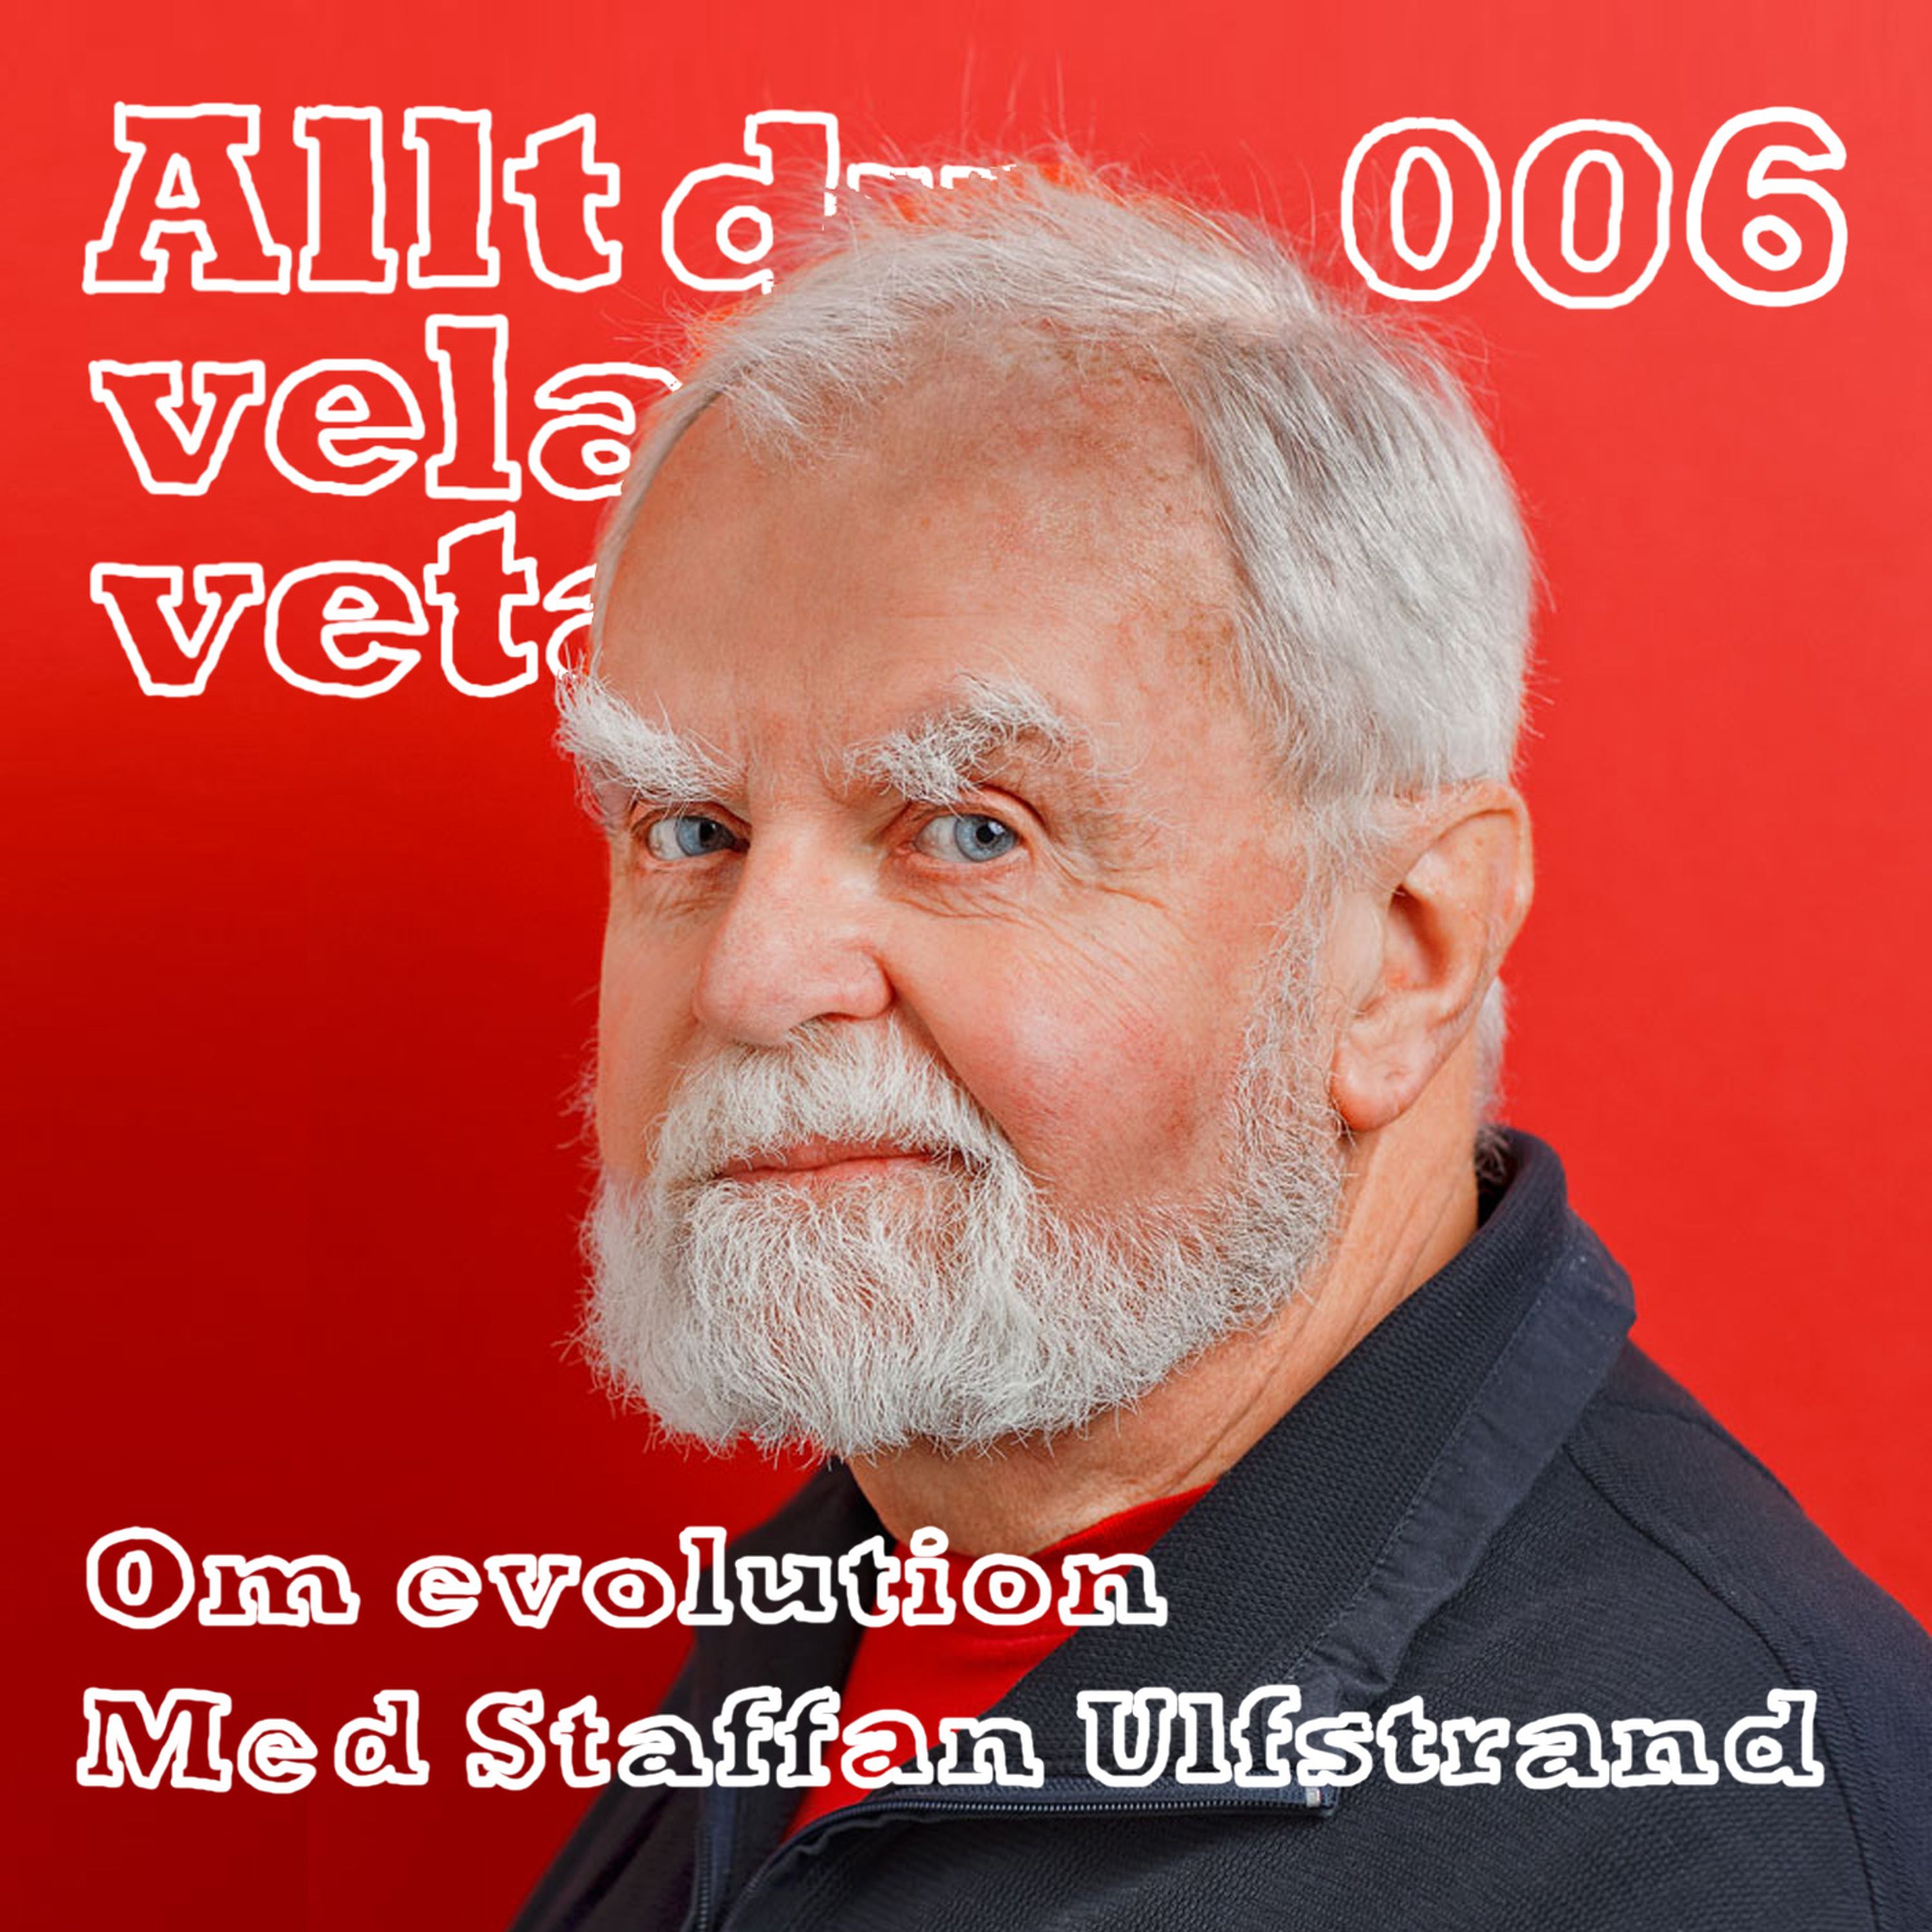 006 Om evolution med Staffan Ulfstrand